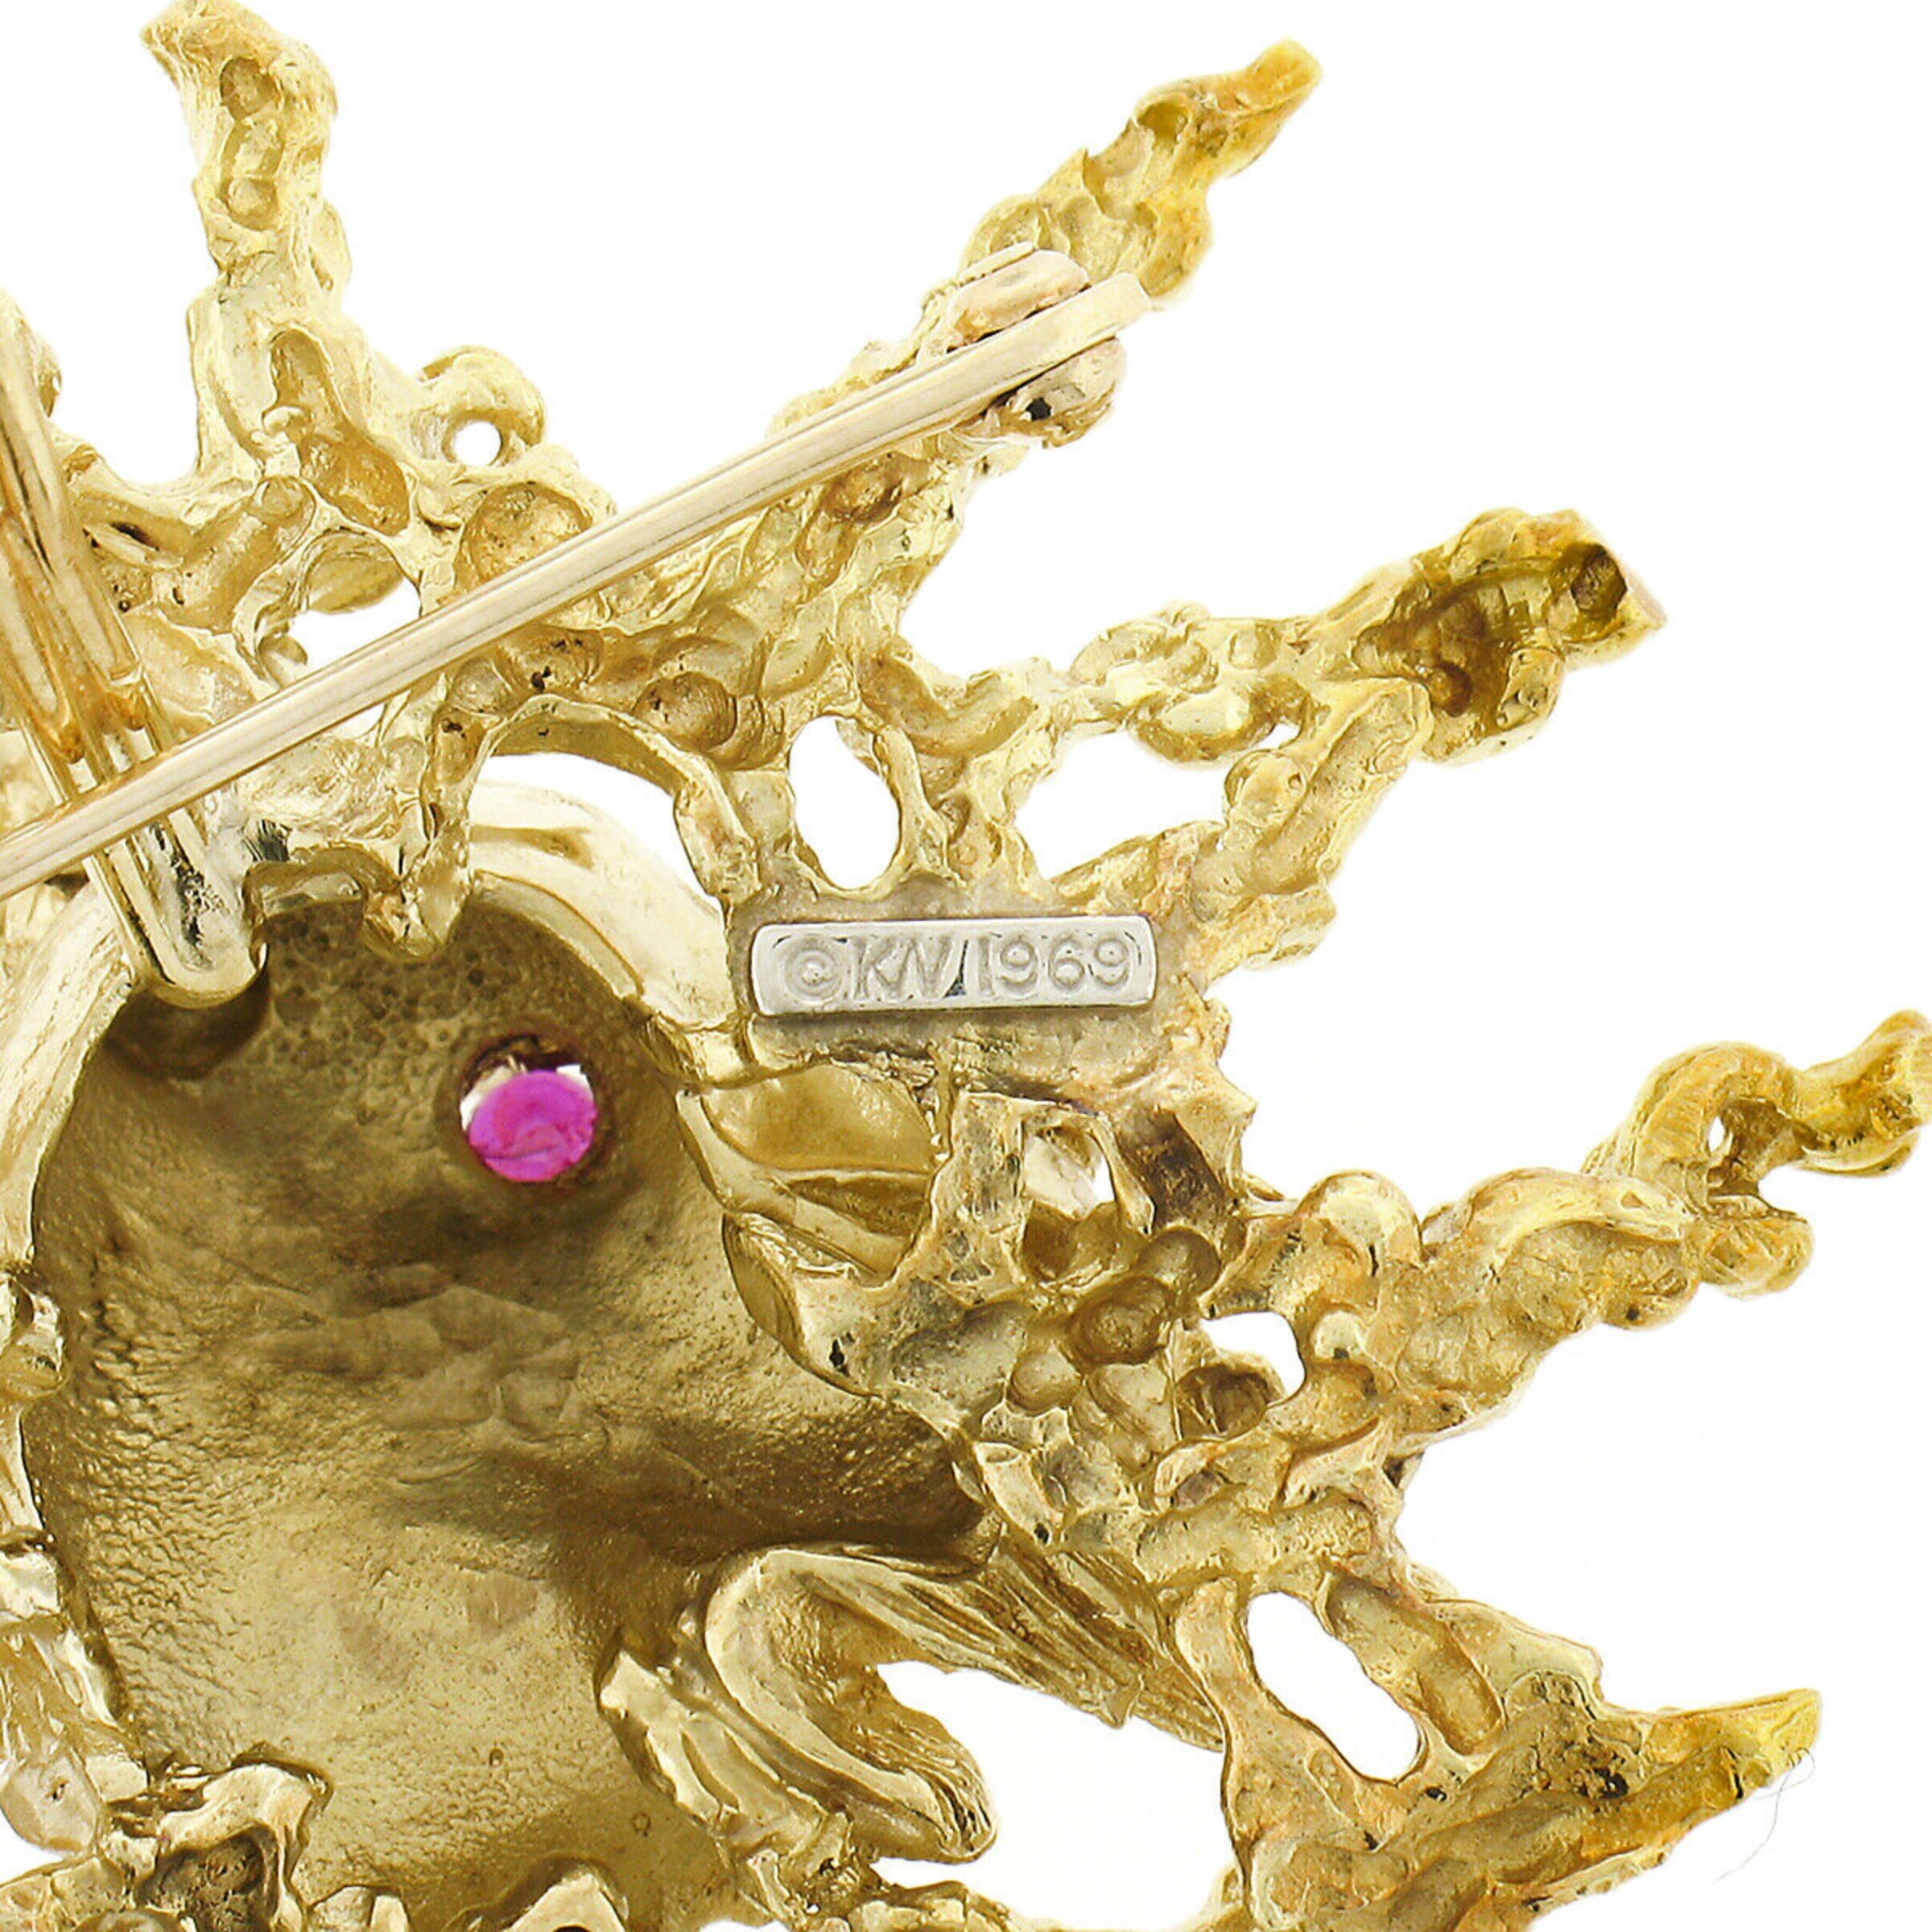 Large Vintage Kurt Wayne 18k Gold Ruby Detailed Textured Ram Brooch Pin Pendant 1